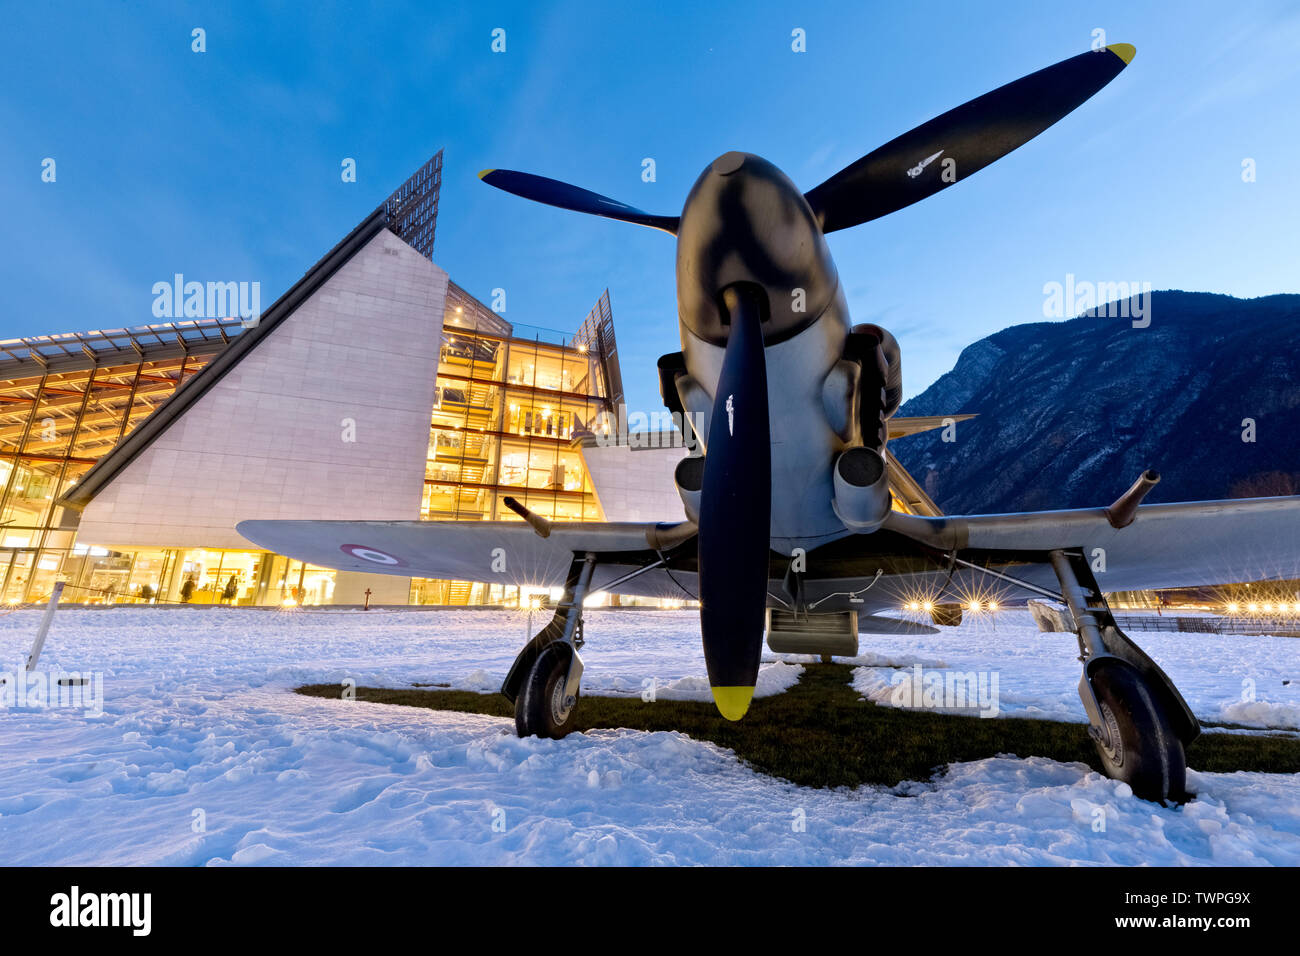 L'Aermacchi 205 aeroplano e il Museo della Scienza del MUSE a Trento. Trentino Alto Adige, Italia, Europa. Foto Stock